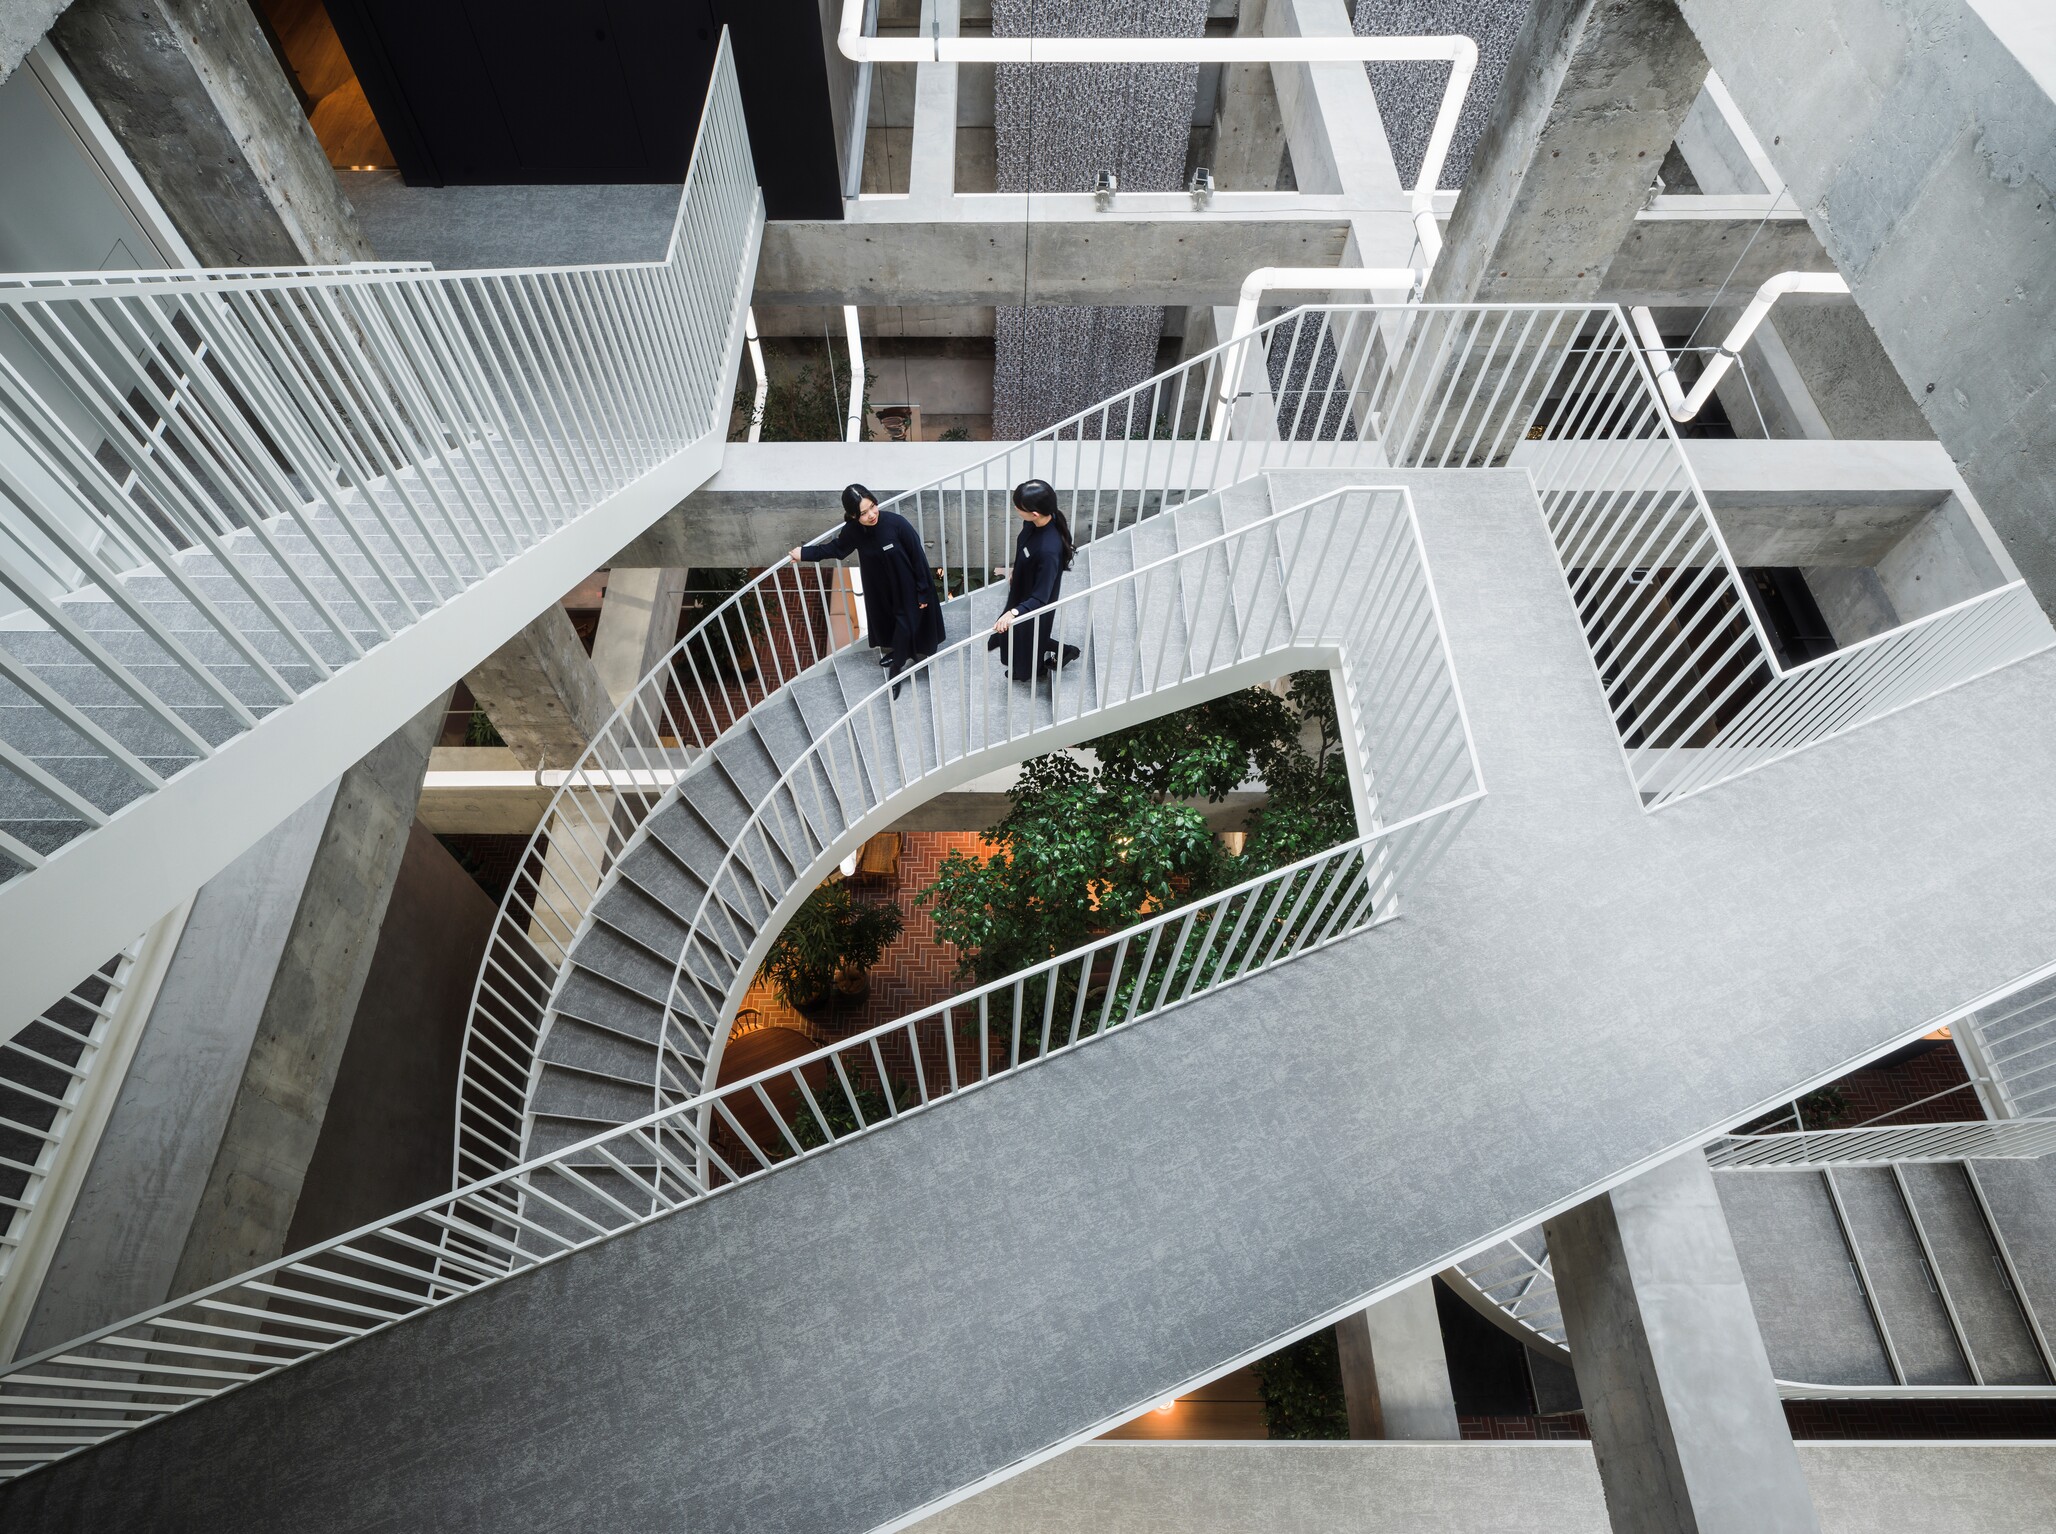 流線型階梯打破了中庭上的方正結構，創造出流動的視覺美感。